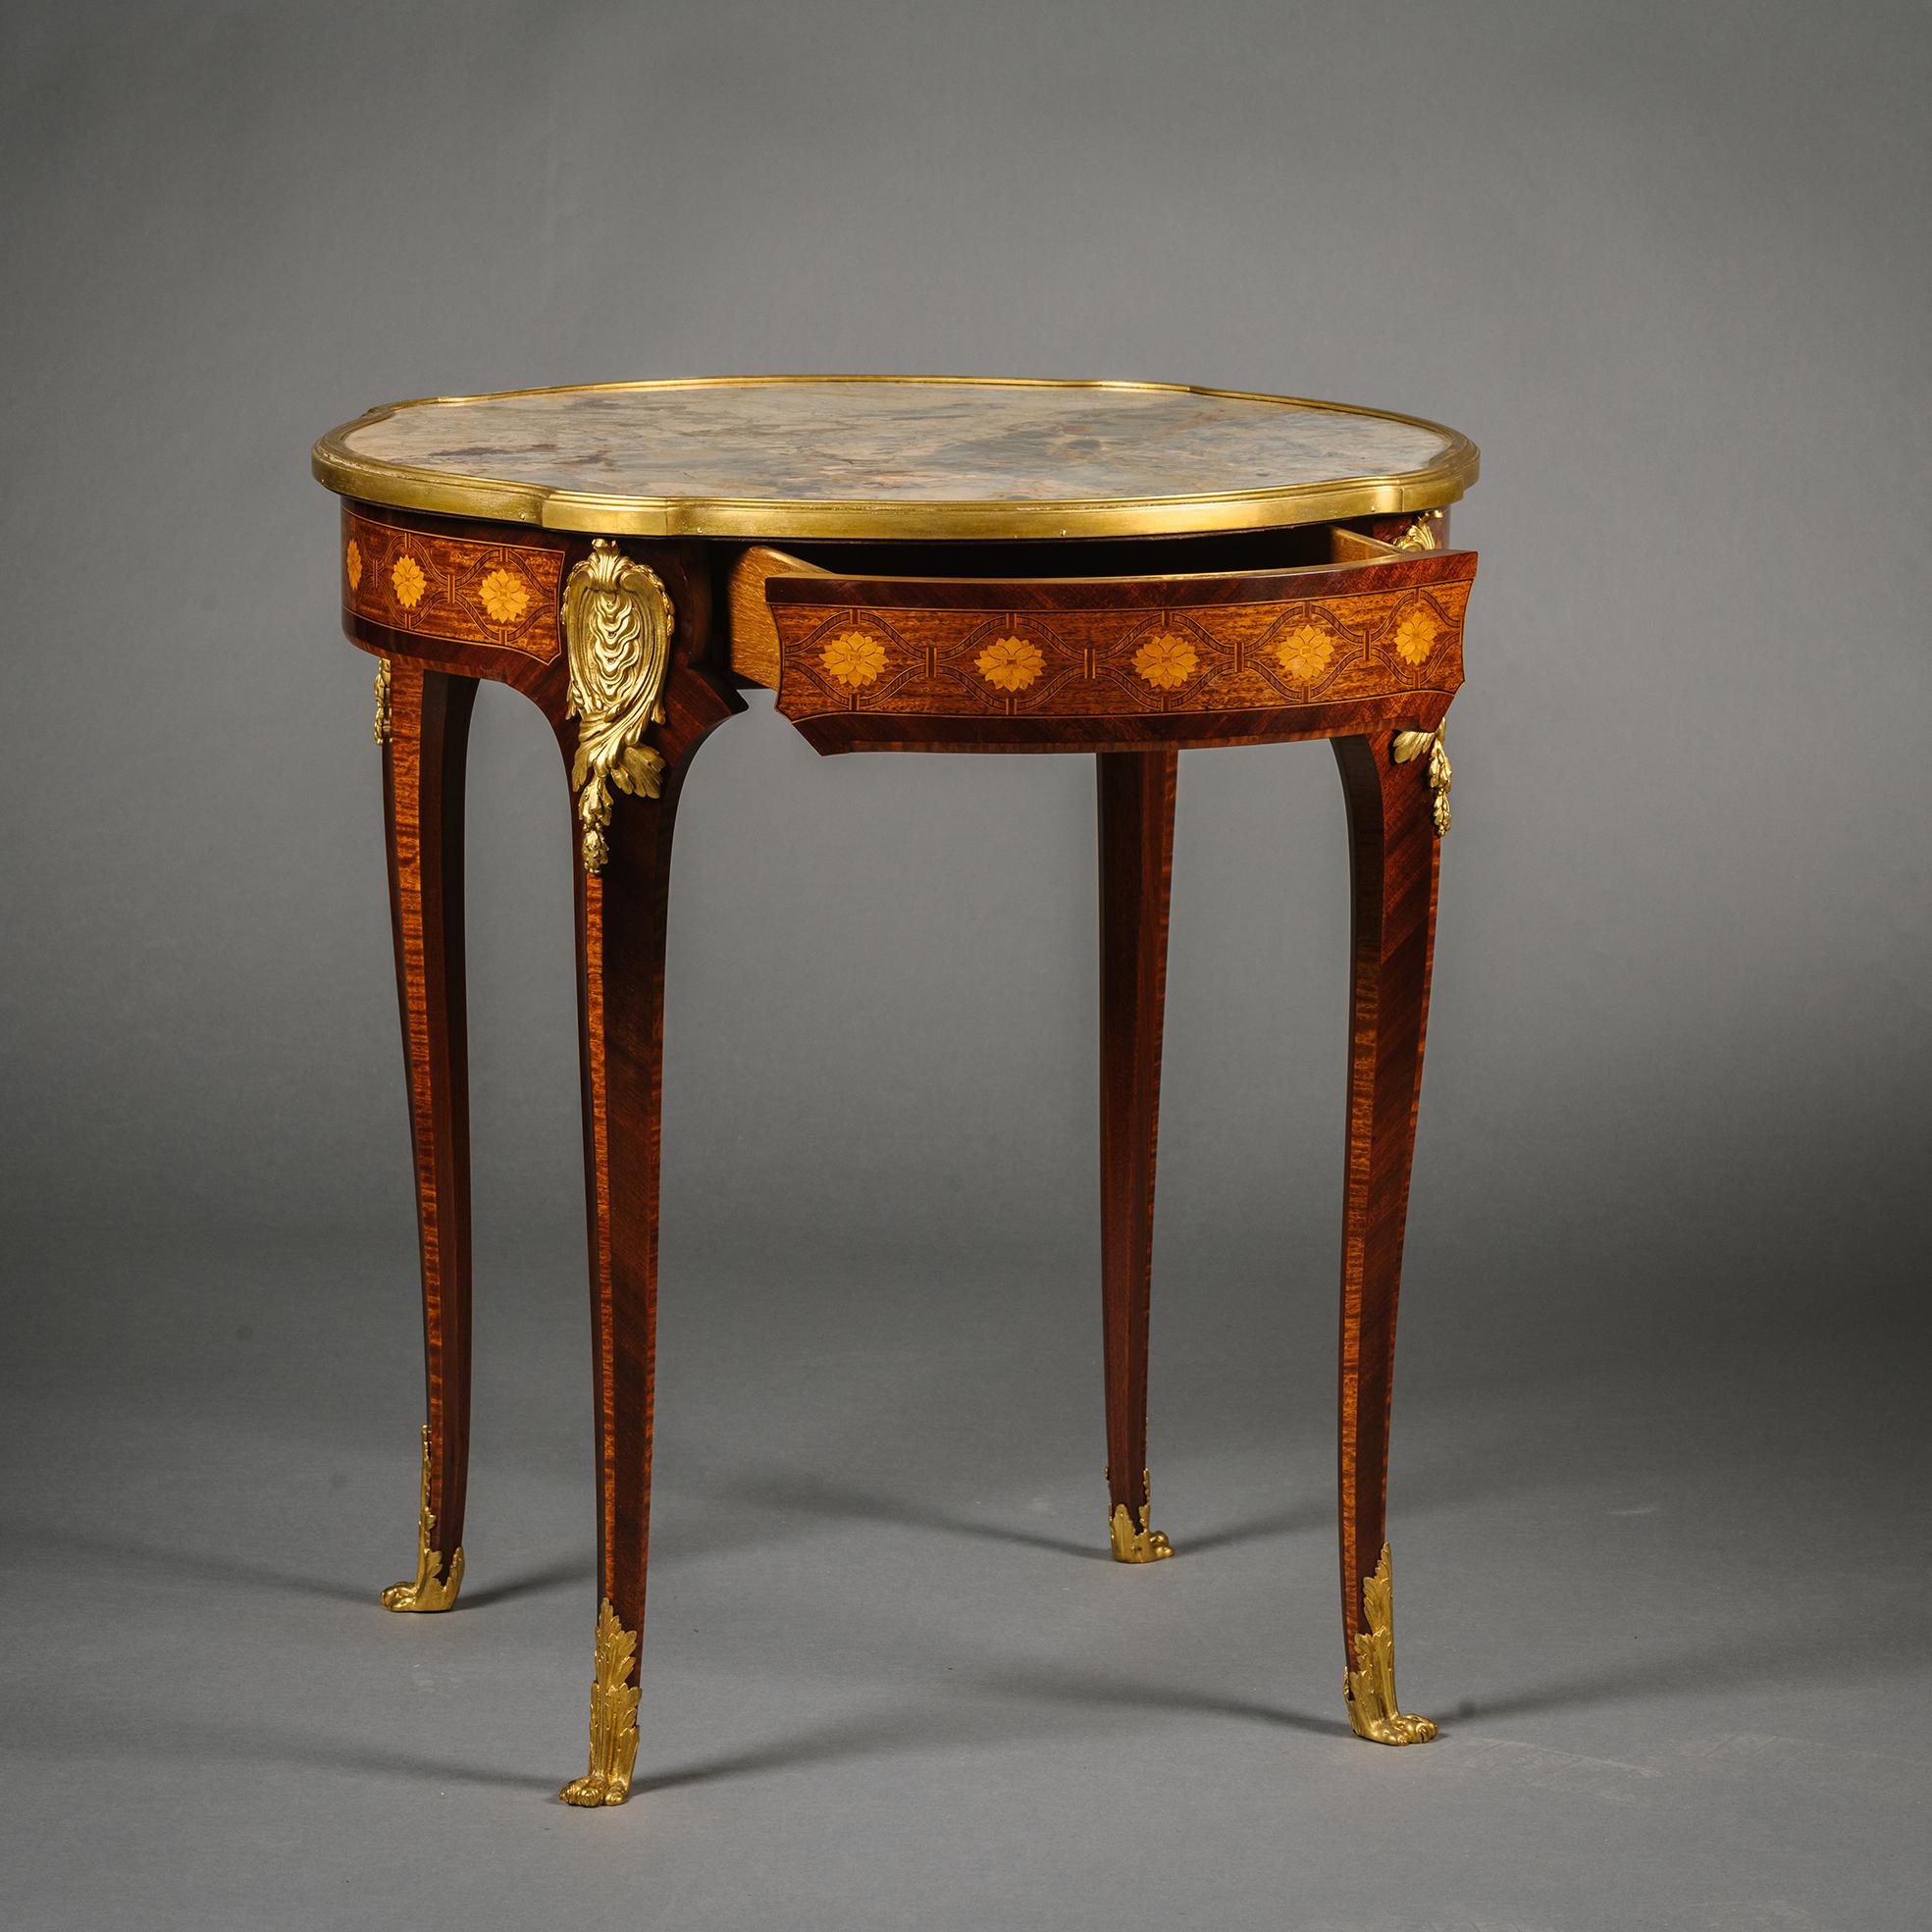 Ein Louis XV Stil vergoldet-Bronze montiert Mahagoni und Parkett Occasional Tisch.

Die Platte aus Sarrancolin-Marmor ist von einer Einfassung aus vergoldeter Bronze umgeben. Der Fries ist mit einer prächtigen Parkettierung aus mit Sonnenblumen